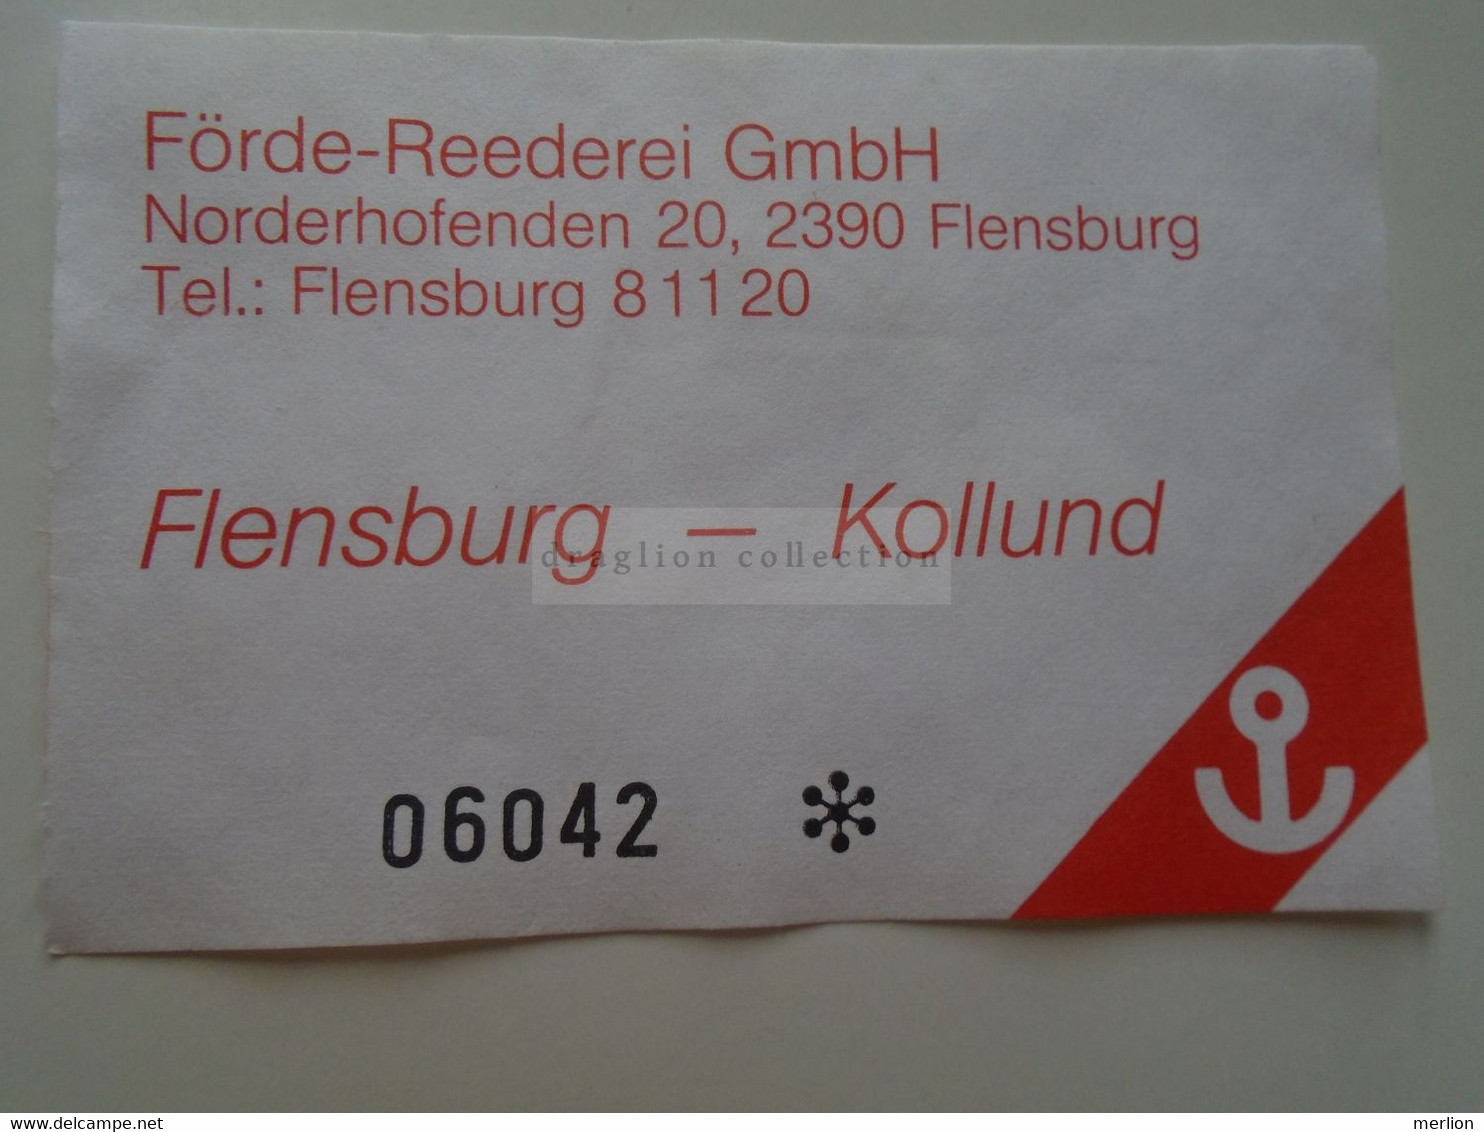 DT013   "Förde Reederei GmbH"  FLENSBURG  - Fahrschein   Ticket   Flensburg Kollund - Europe